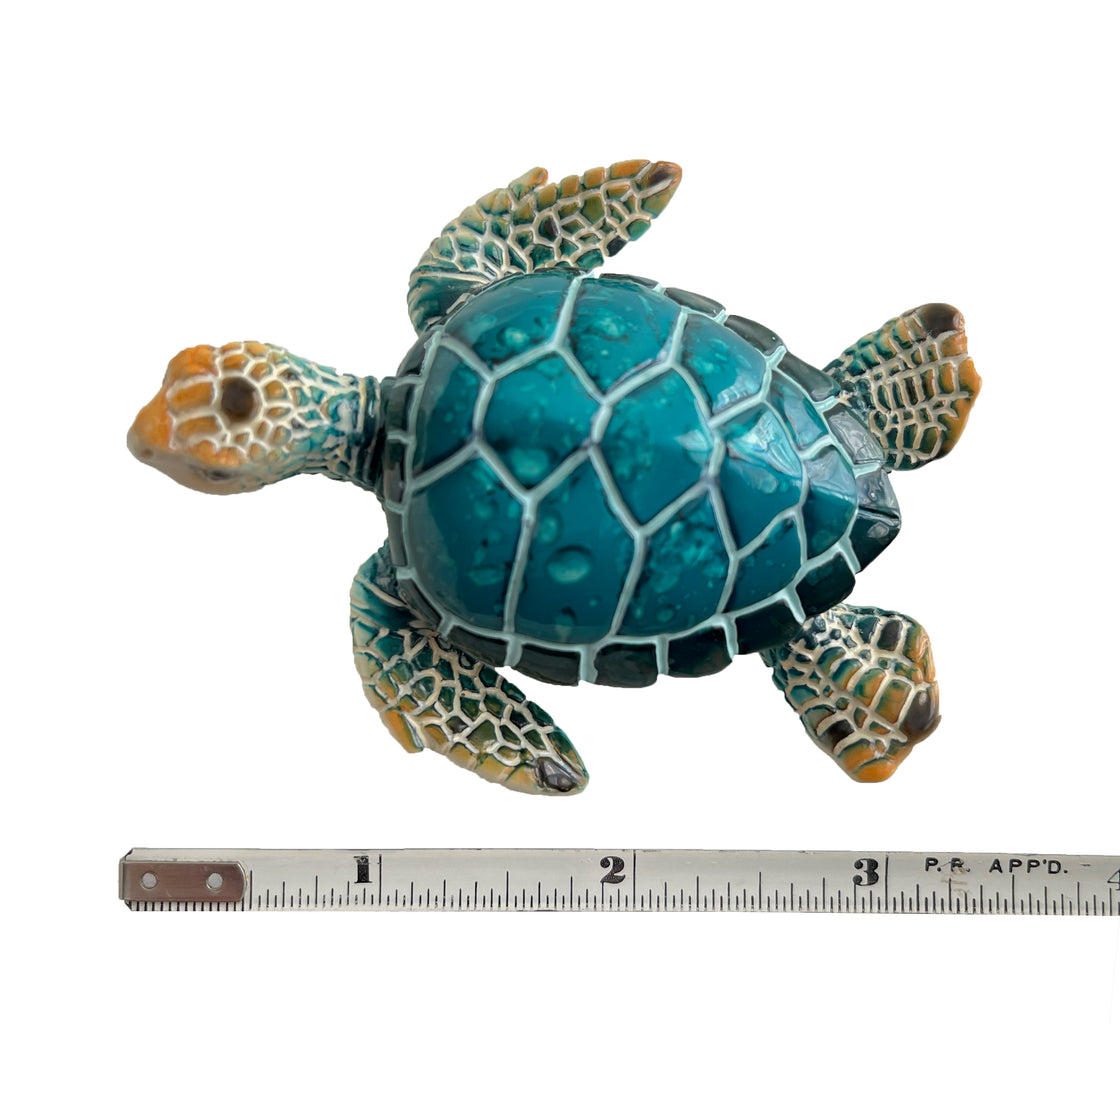 Decorative Sea Turtle Fridge Magnet - Hand Painted Ceramic Aquatic Life Figurine